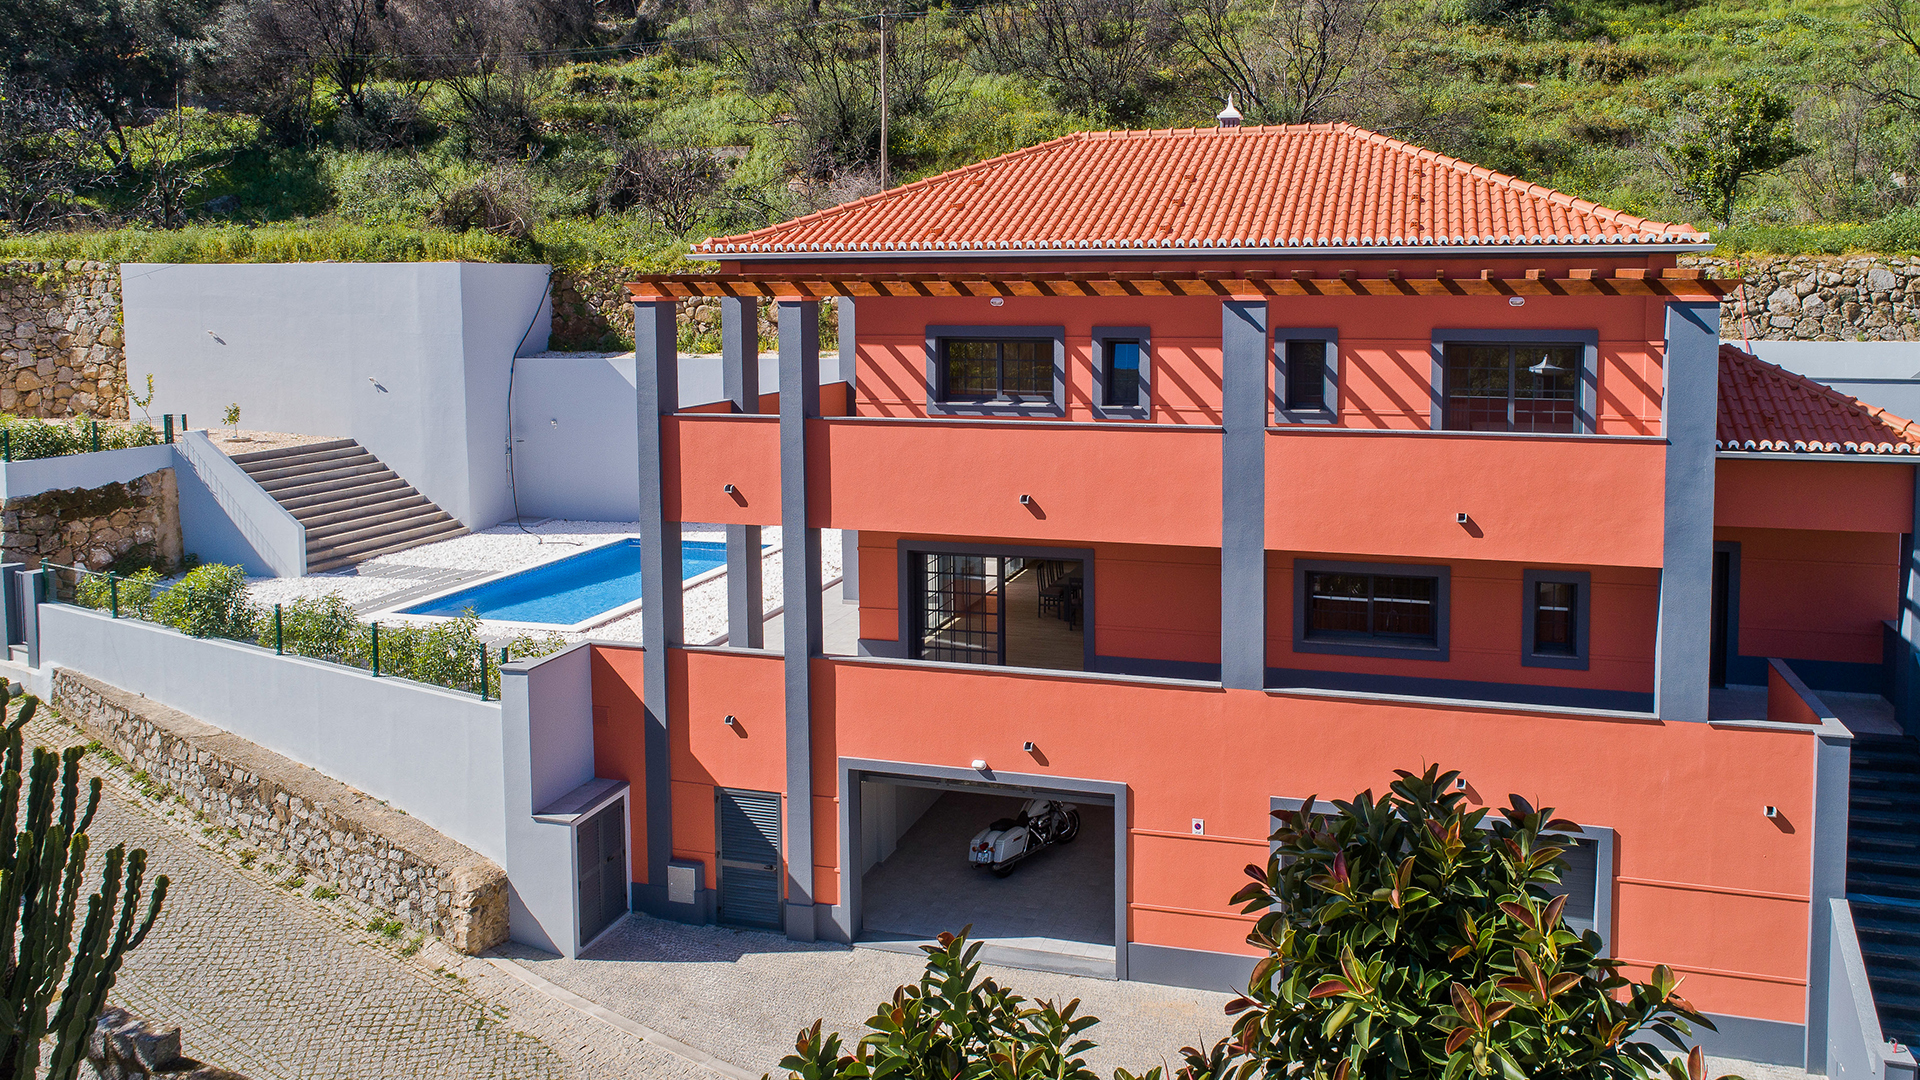 Nova Moradia Moderna de 3 Quartos em Caldas de Monchique, Algarve Barlavento | LG1619 Esta é uma villa nova, de 3 quartos, pronta para uso e de alta qualidade, com piscina à beira do famoso vilarejo de spa de Caldas de Monchique, com vistas verdes ao redor e comodidades à porta.